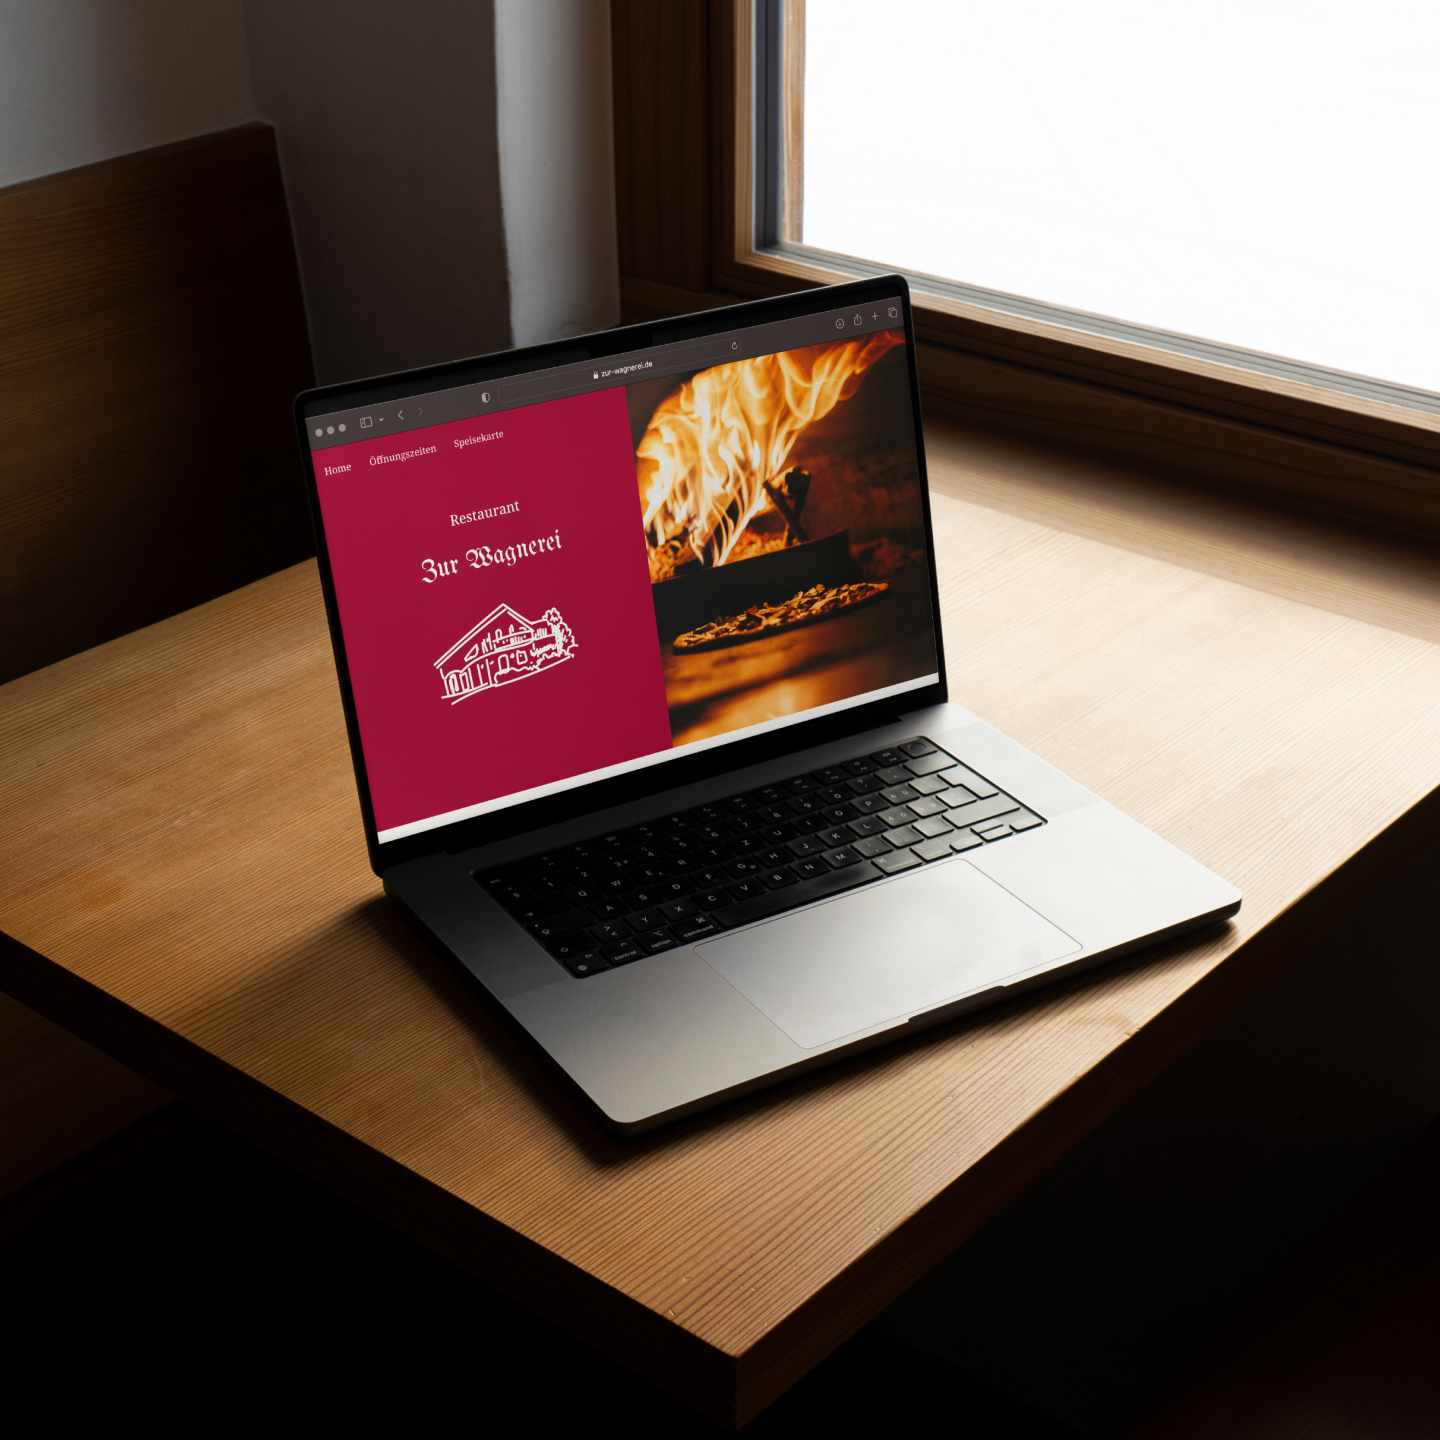 Startseite der Zur Wagnerei Website in einem Macbook, das auf einem Holztisch steht.